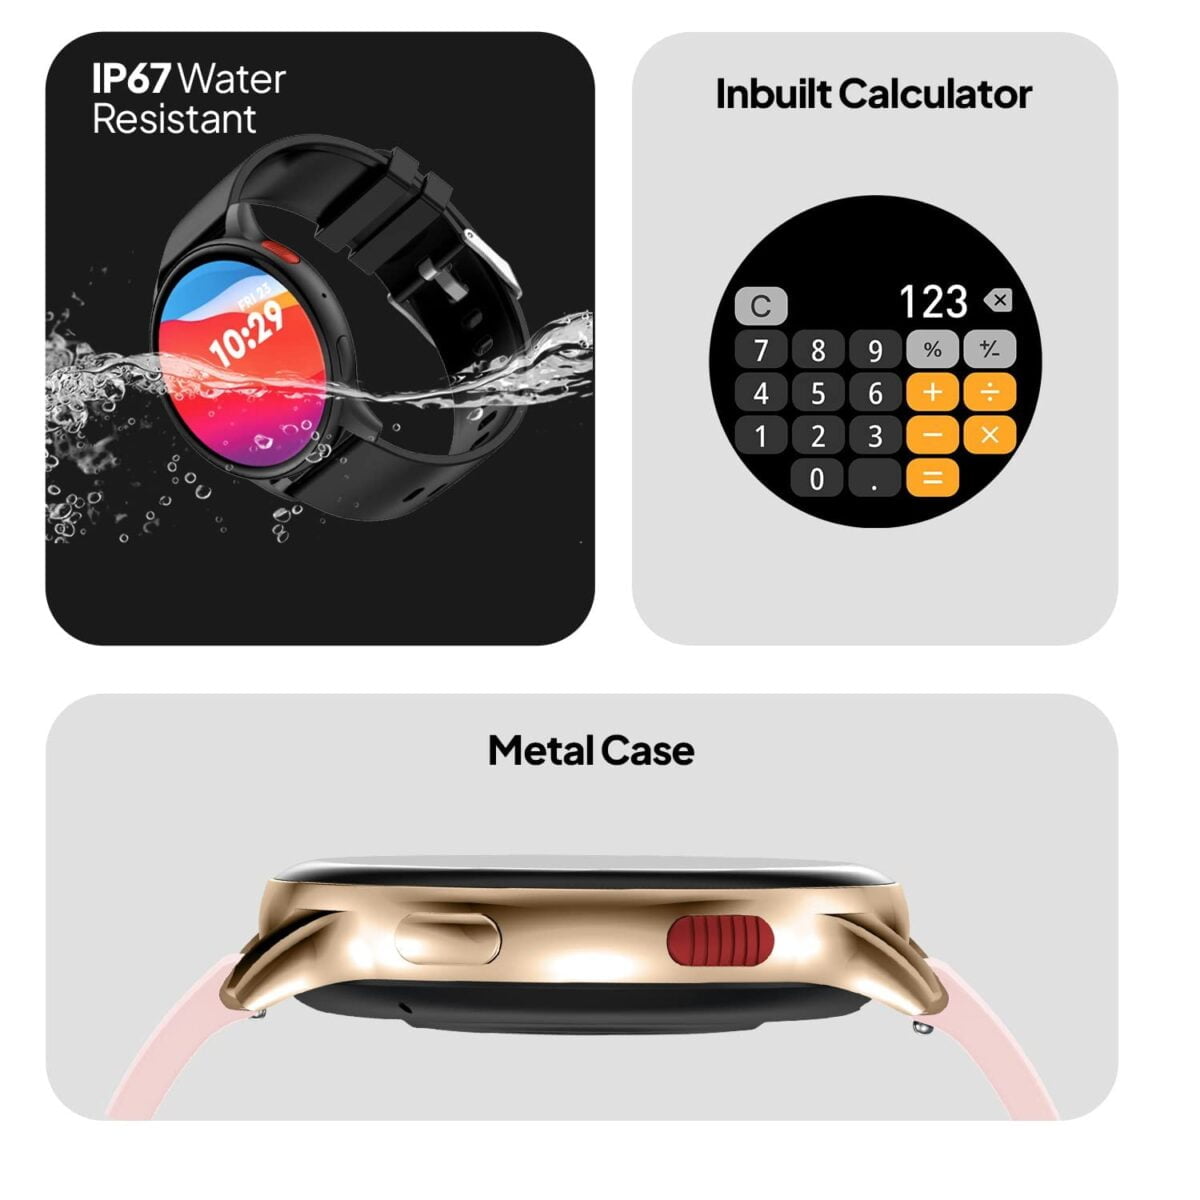 Fire boltt eclipse 1. 43 amoled smartwatch gold pink 6